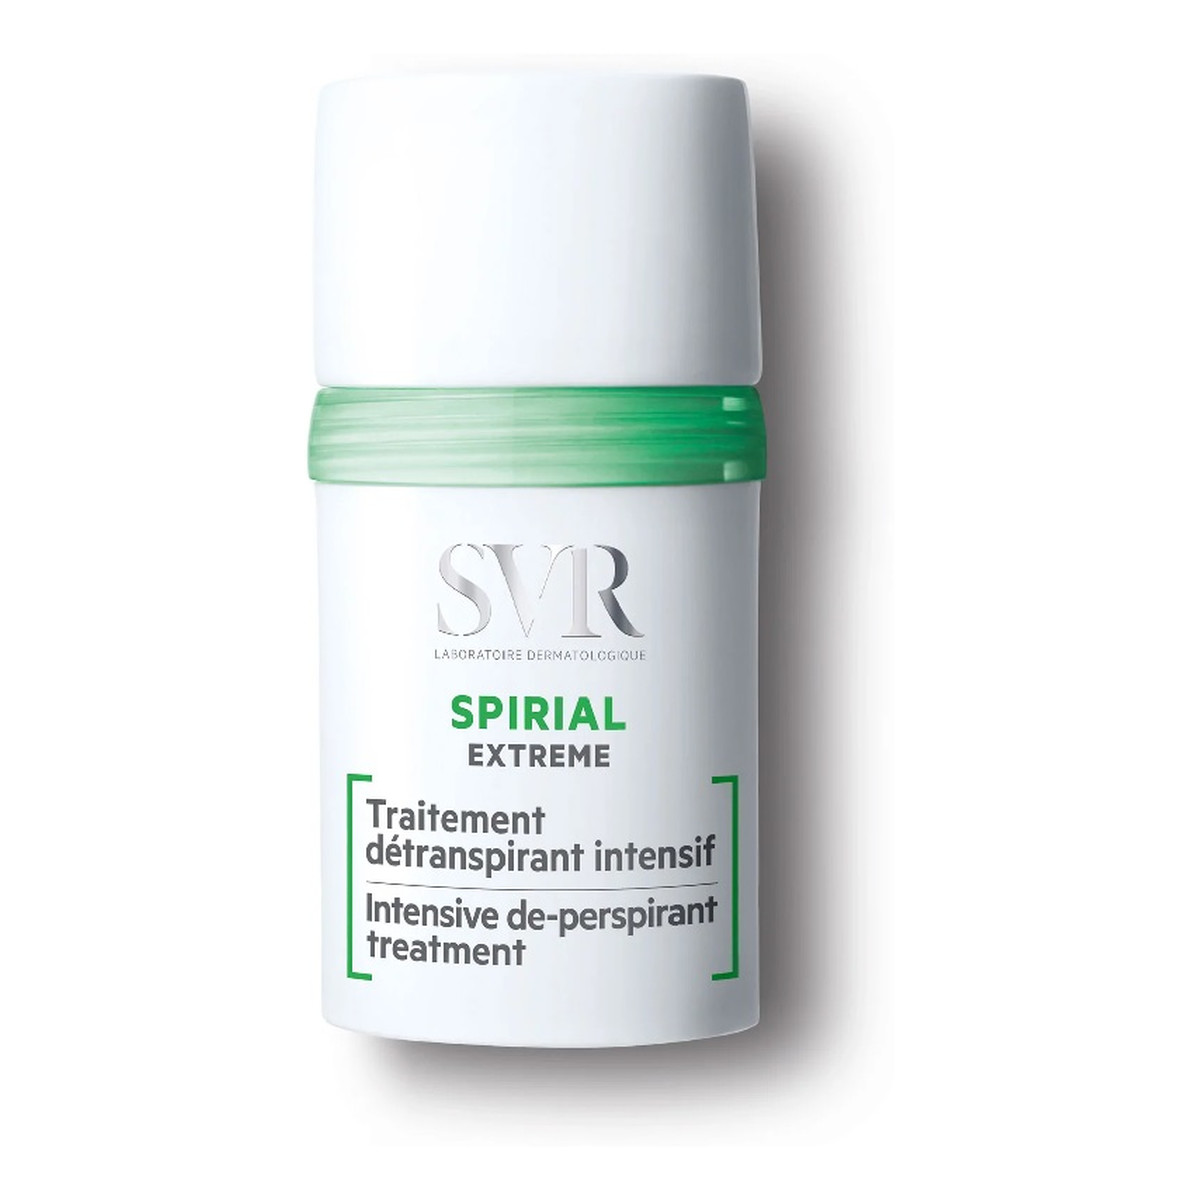 SVR Spirial Extreme intensywny antyperspirant w kulce 20ml